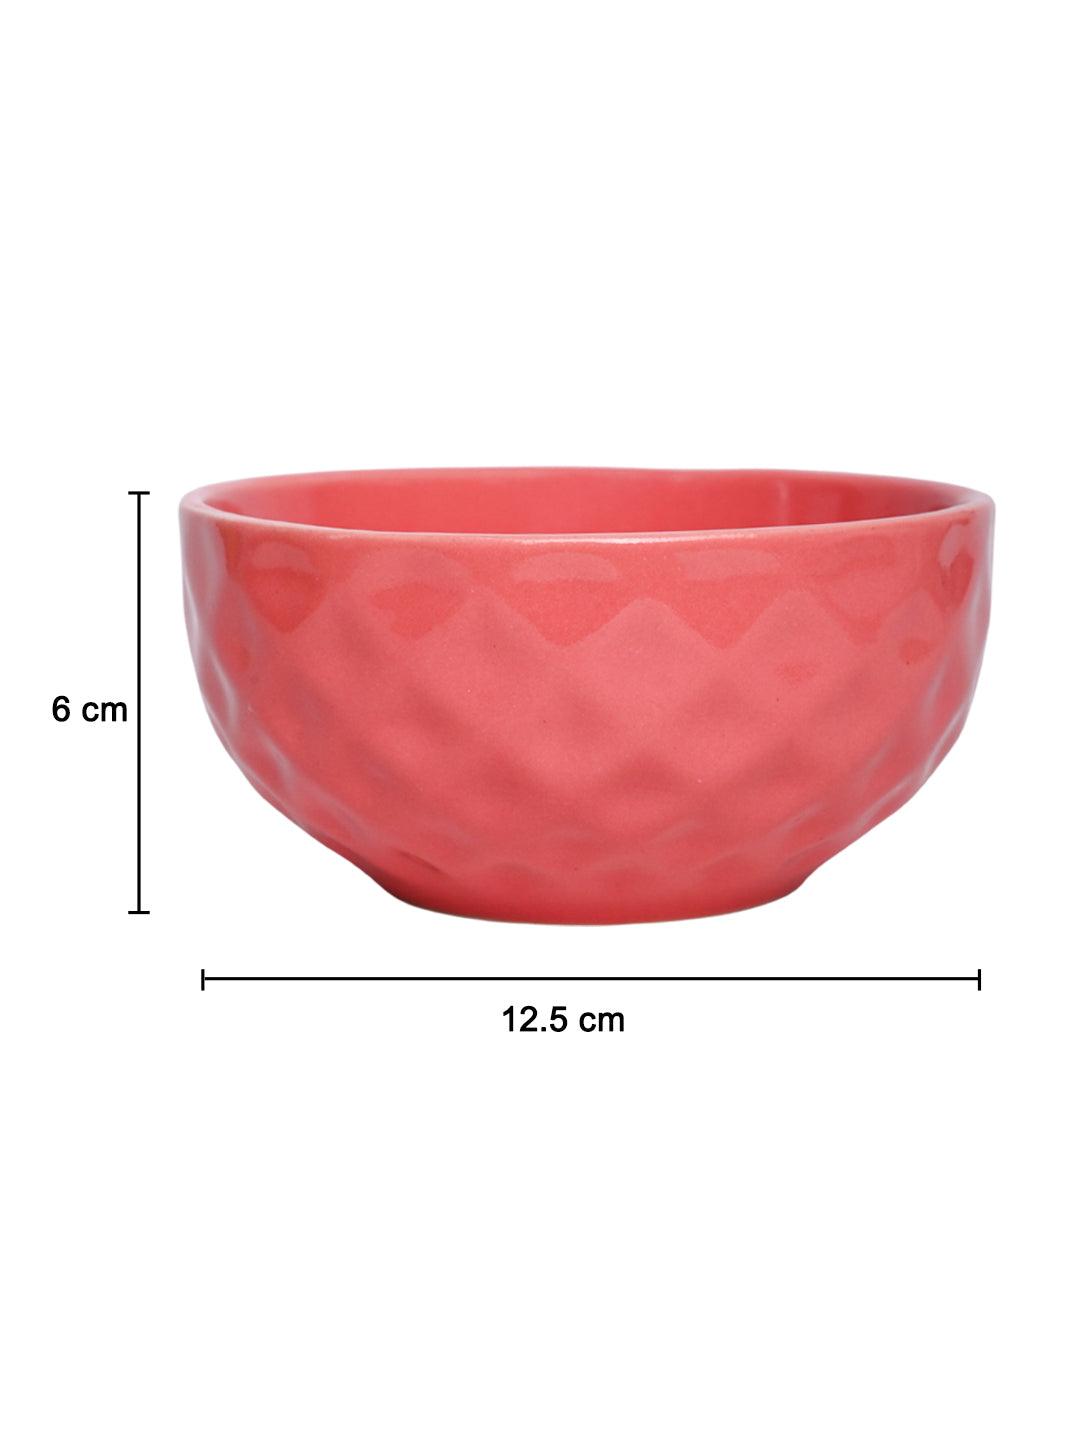 VON CASA Ceramic Bowl - 450Ml, Light Pink - MARKET 99